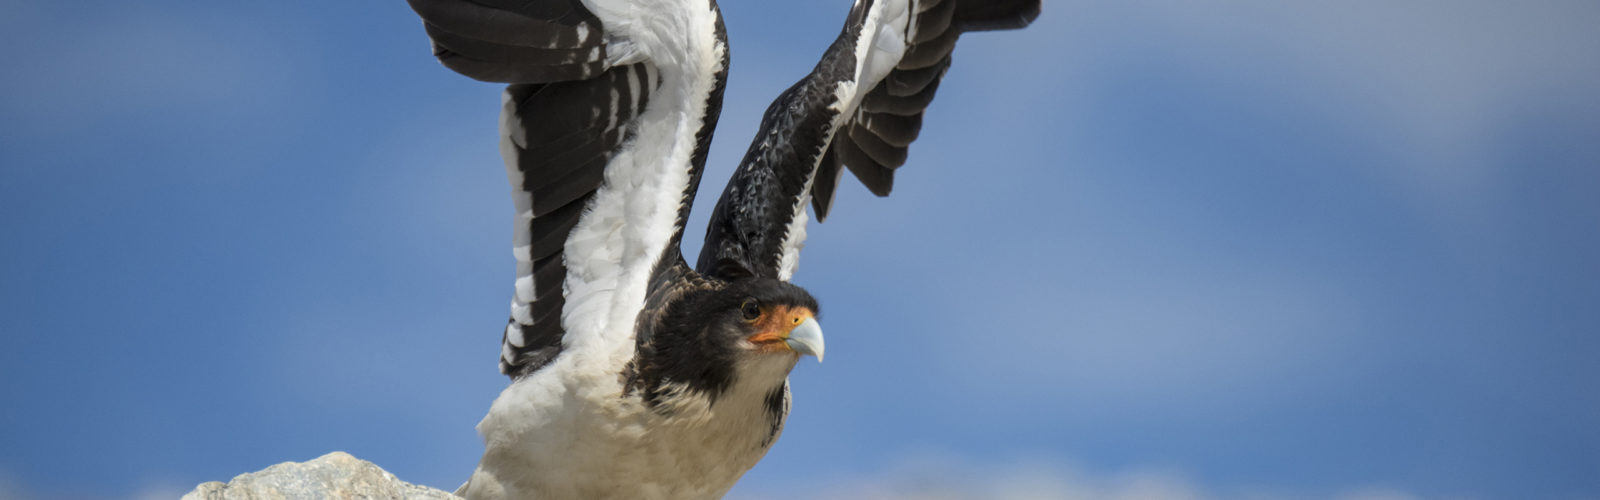 patagonia-bird